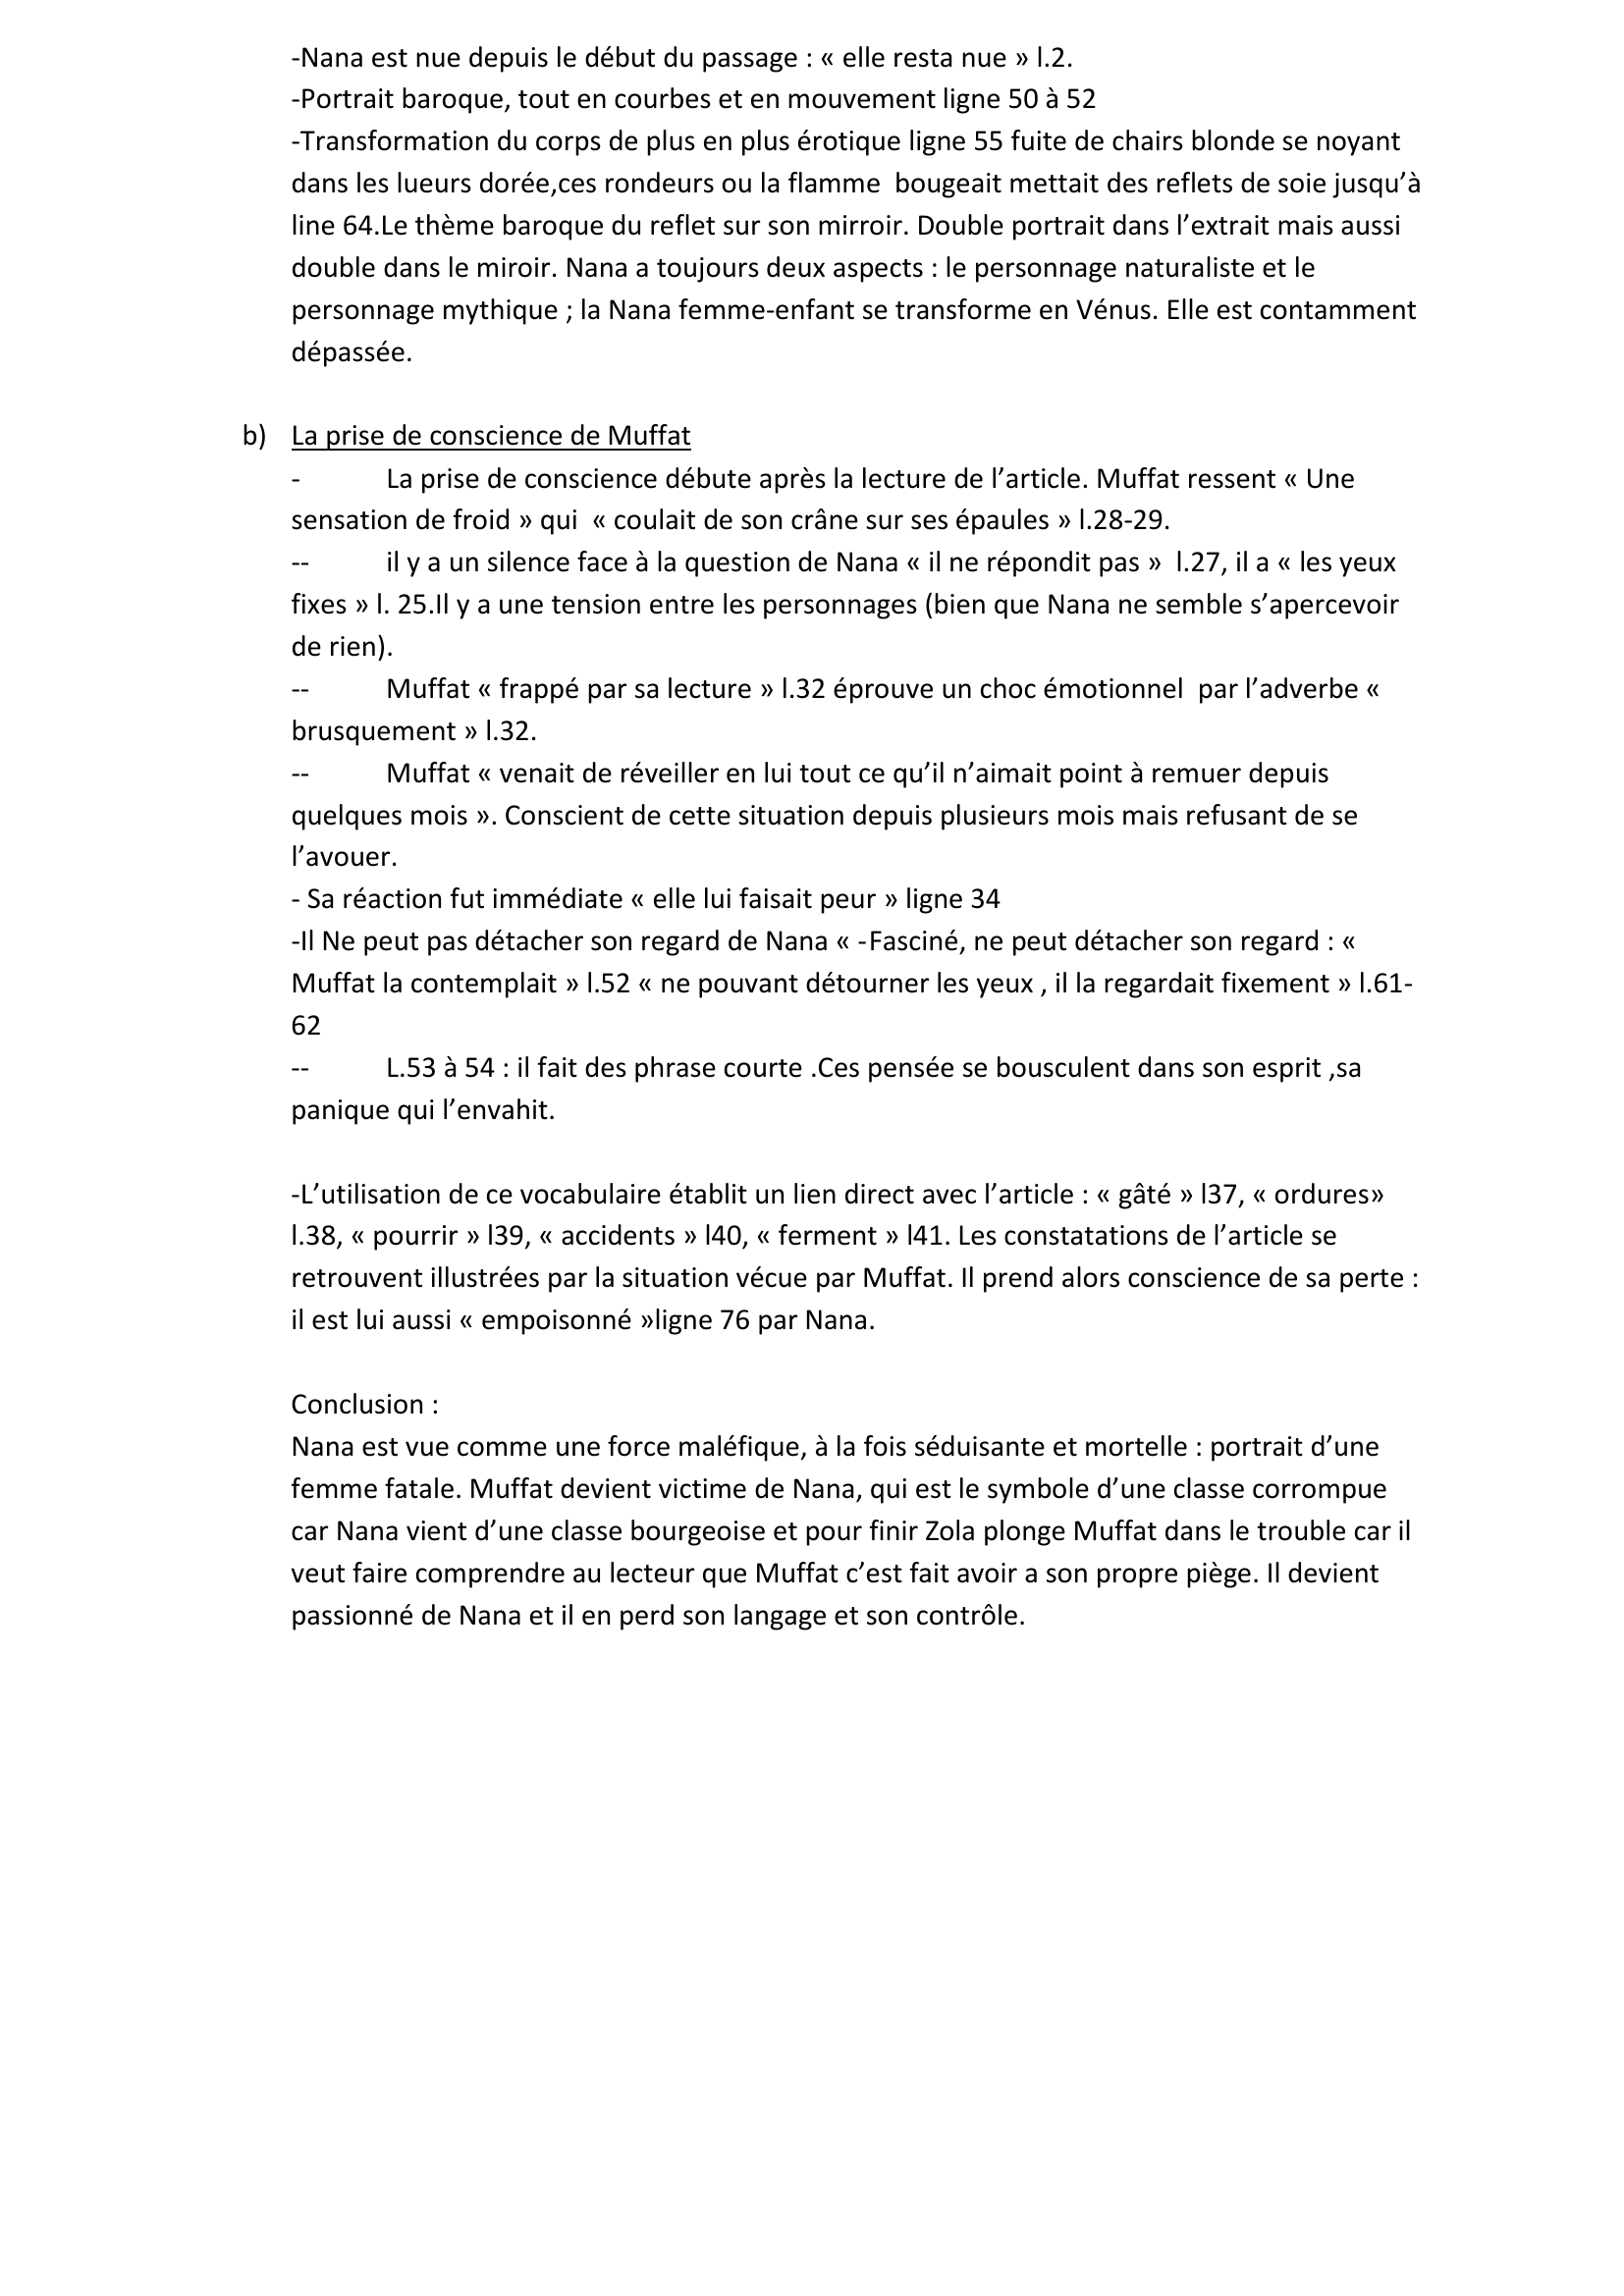 Prévisualisation du document NANA DE ZOLA: Muffat lit l'article du journaliste Fauchery, publié dans le journal Le Figaro et qui a pour titre « La Mouche d'or »